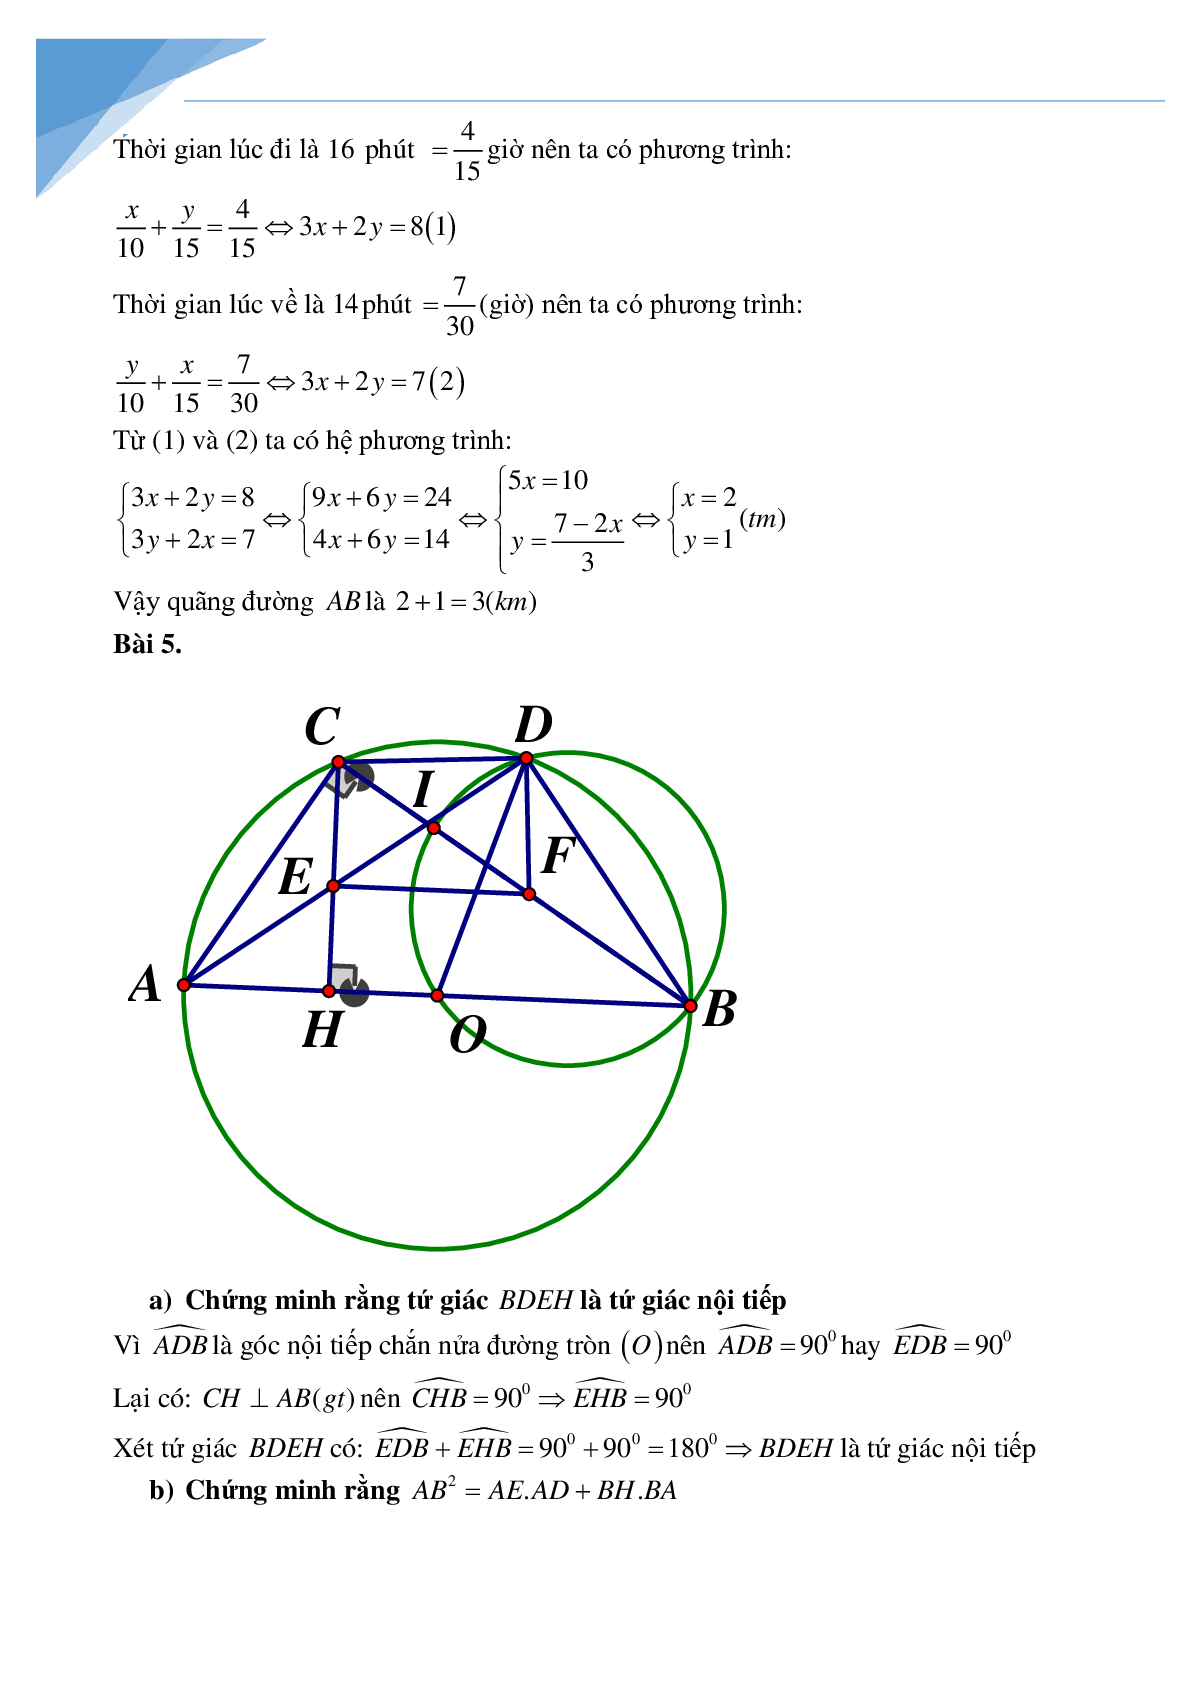 Bộ đề thi vào lớp 10 môn toán tỉnh Đà Nẵng (trang 5)